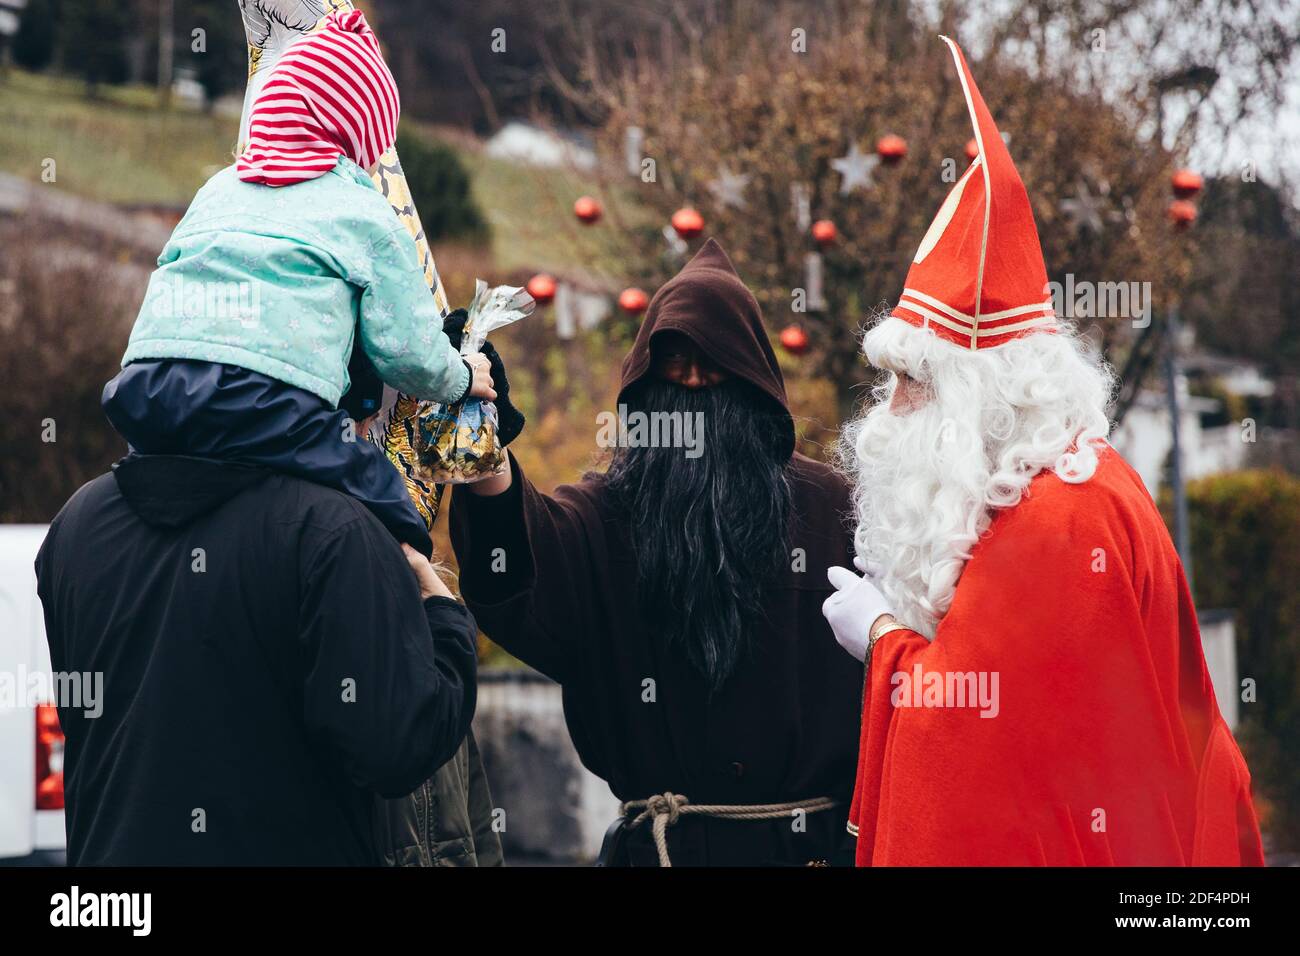 Balgach, Schweiz- 12/02/2018: Samichlaus und sein Begleiter Schmutzli auf  dem Weihnachtsmarkt in der Region St. Gallen. Kinder erzählen Verse ab  Stockfotografie - Alamy